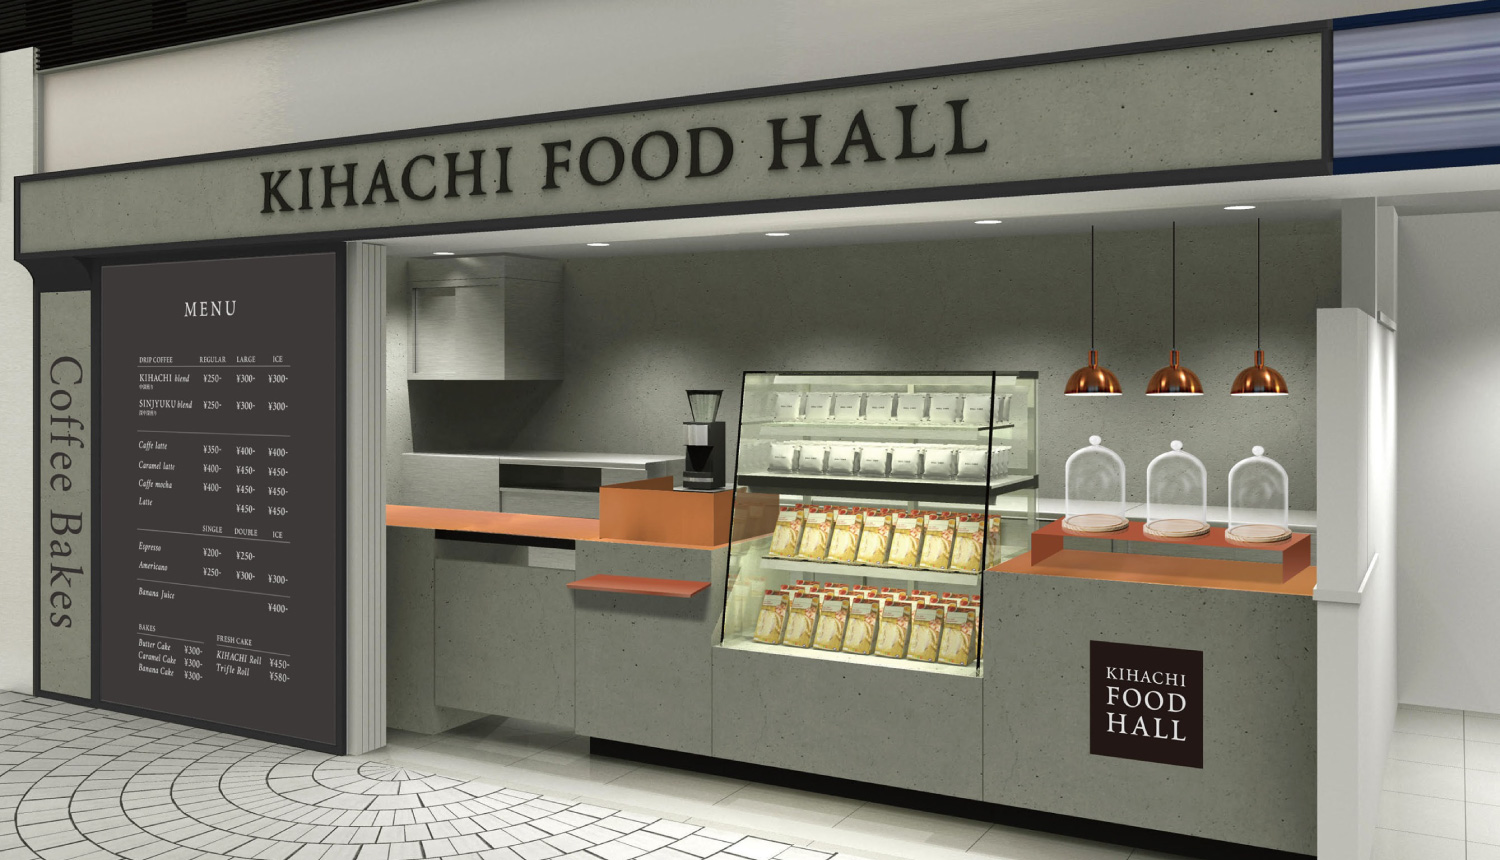 kihachi-food-hall-%e3%82%ad%e3%83%8f%e3%83%81%e3%83%96%e3%83%a9%e3%83%b3%e3%83%89-%e5%92%96%e5%95%a1%e6%96%b0%e5%ae%bf